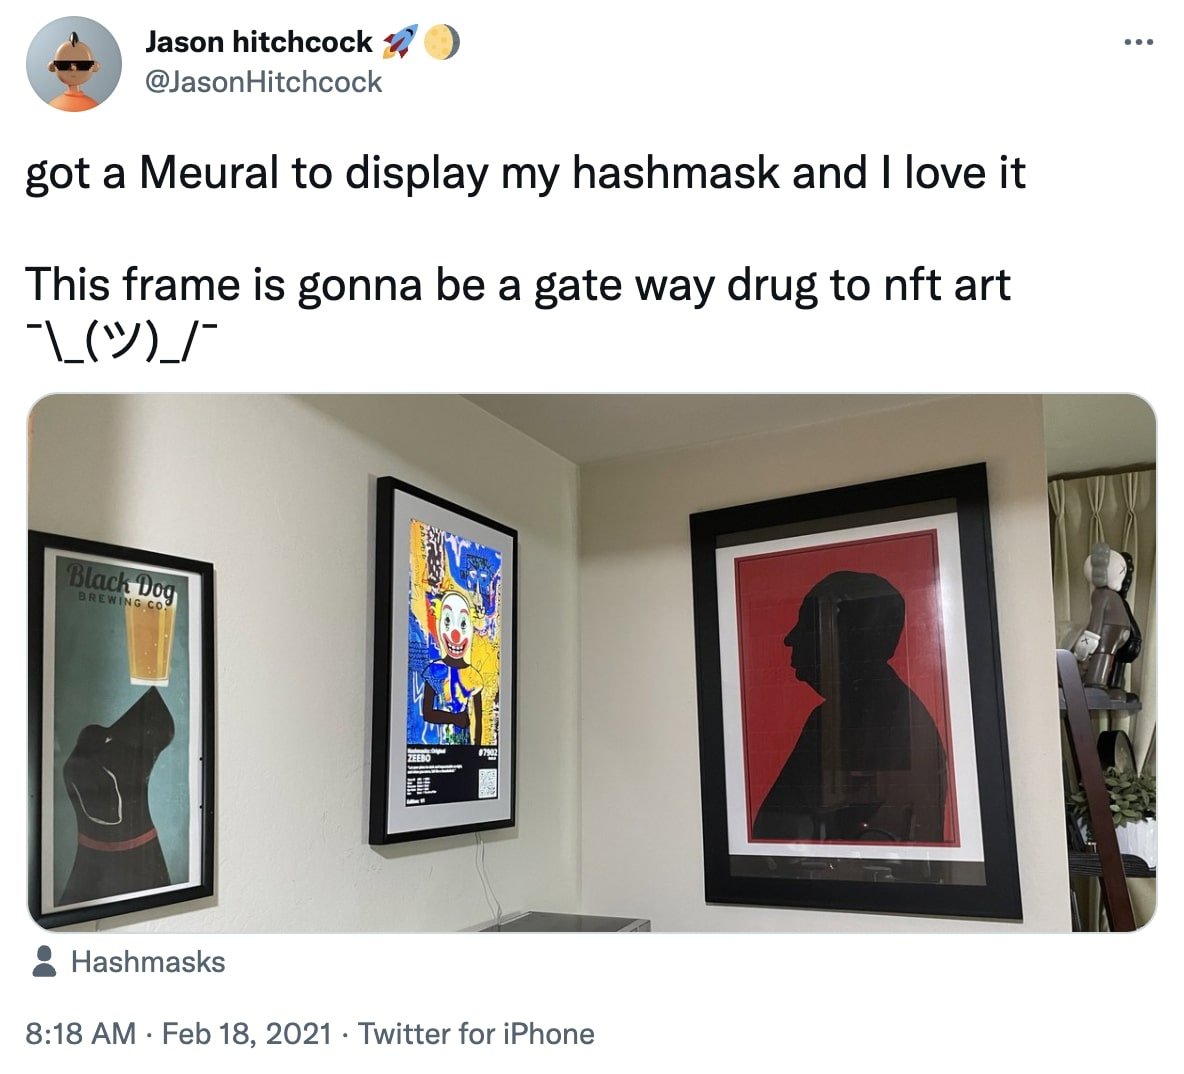 Tweet about Meural NFT display frames